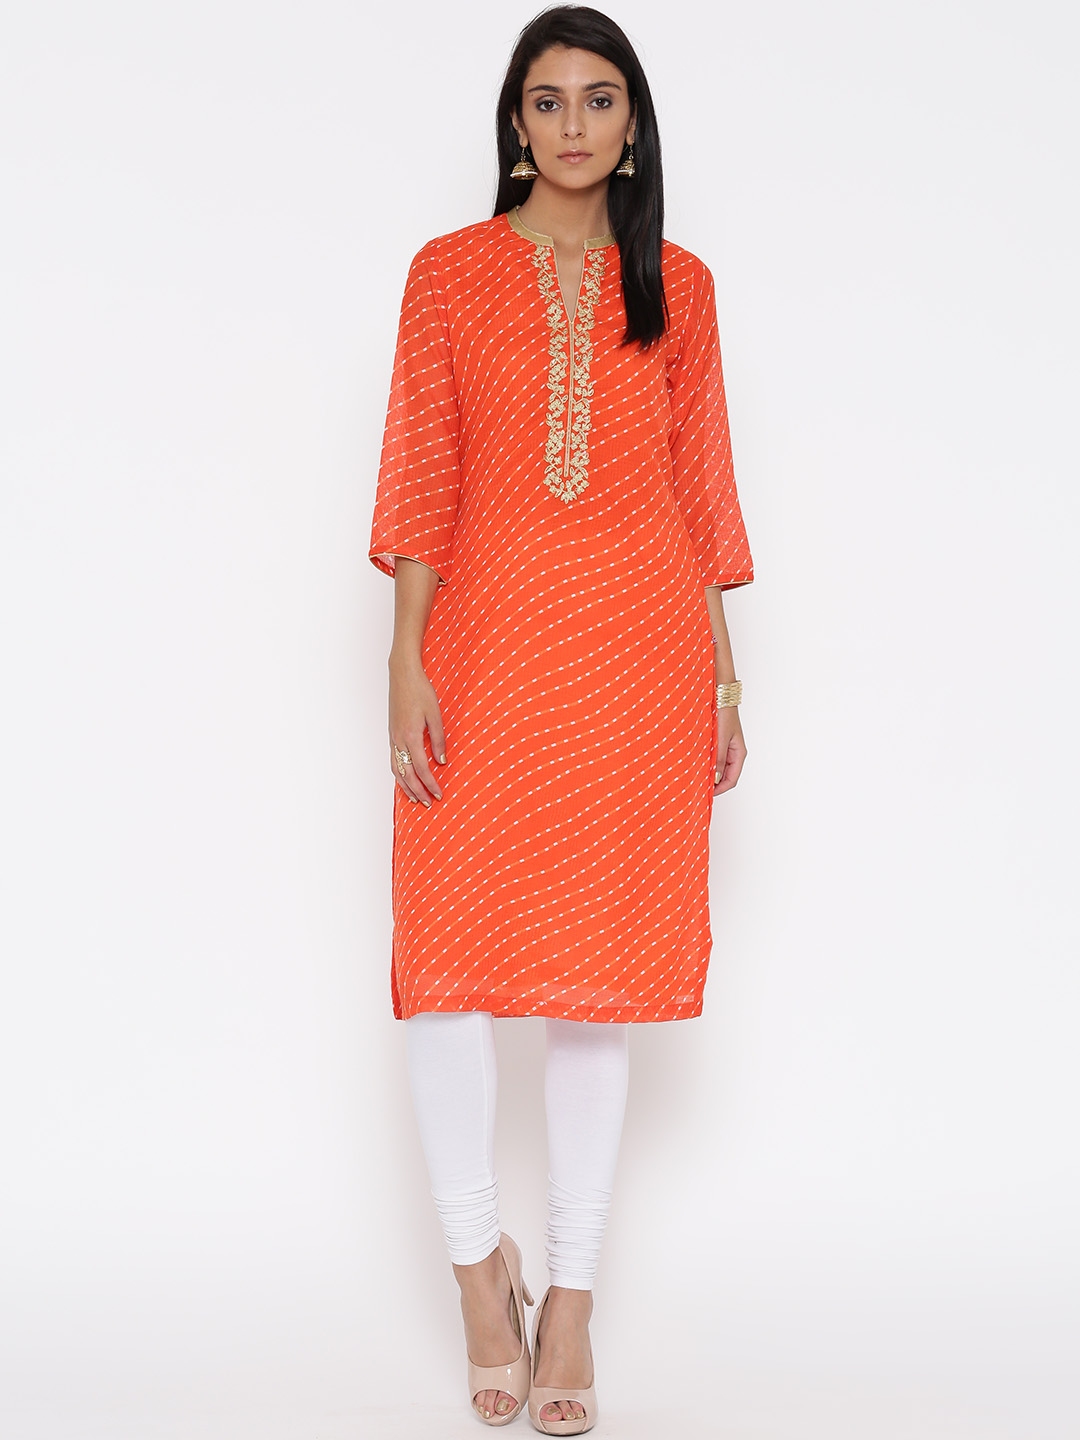 Buy Biba Women Orange Printed Straight Kurta - Kurtas for Women 2025406 ...